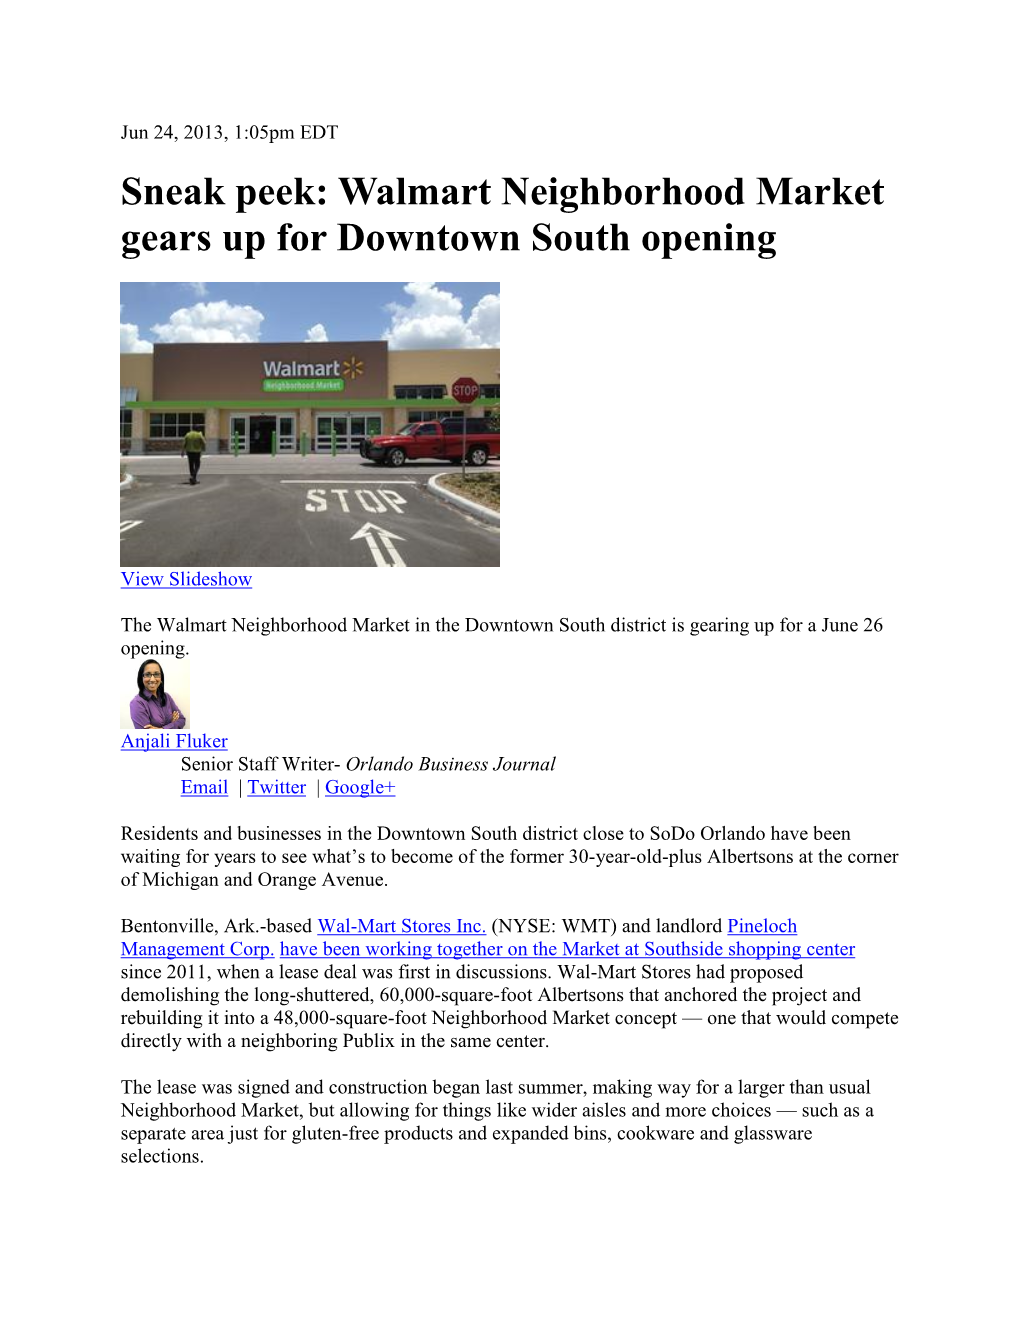 Sneak Peek: Walmart Neighborhood Market Gears up for Downtown South Opening